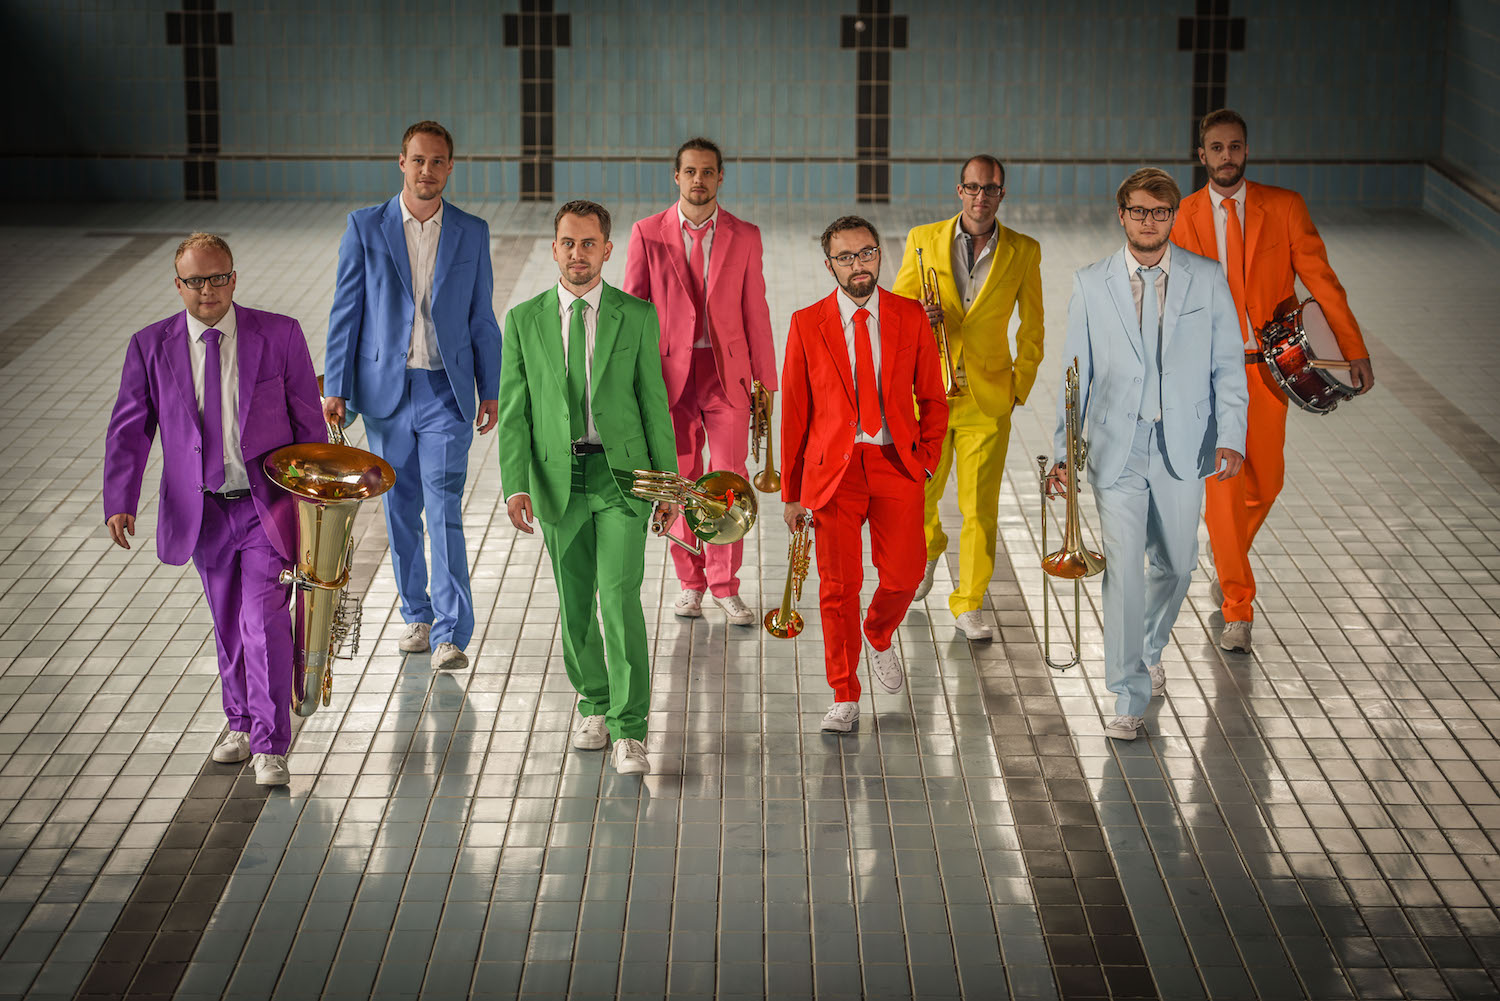 Die Brassband „Unglaublech" – bestehend aus sieben Blechbläsern und einem Schlagzeuger – bereitet ihr fünftes Programm vor. Das Publikum erwartet eine einzigartige Mischung aus Jazz, Pop und Show.